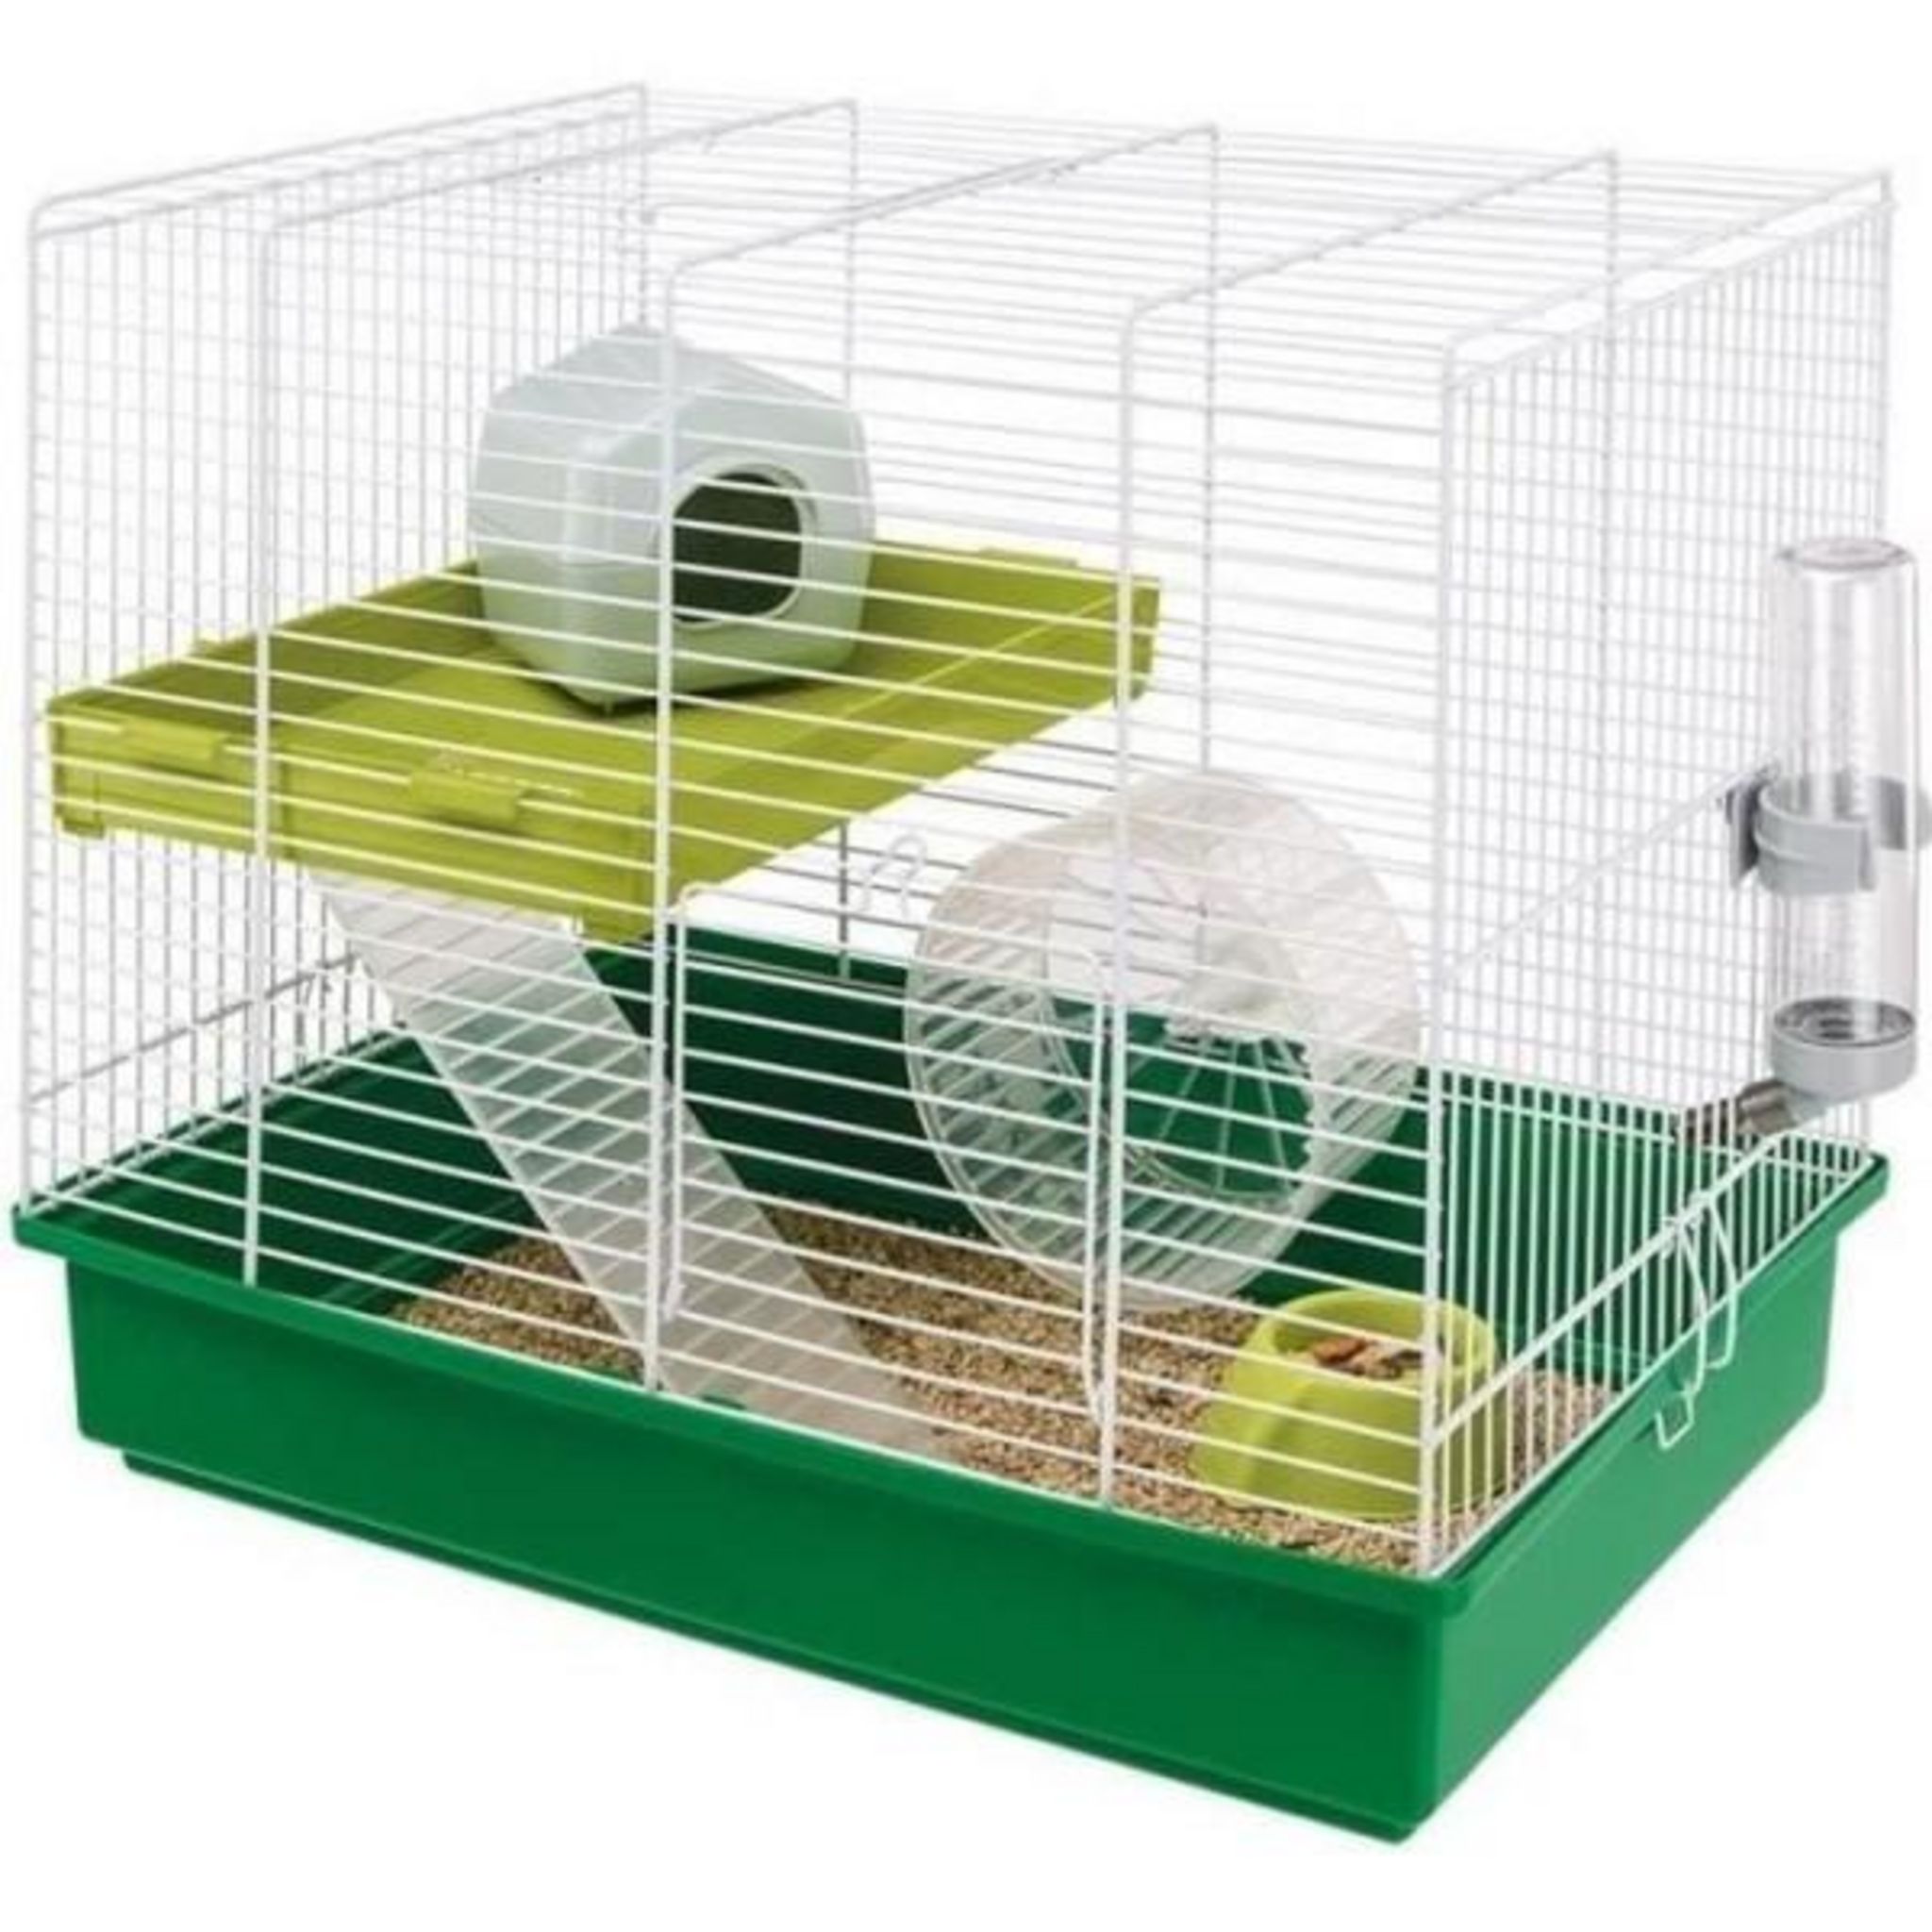 ZOLUX Cage sur 2 étages pour hamsters, souris et gerbilles - Rody3 duo - L  41 x p 27 x h 40,5 cm - Grenadine